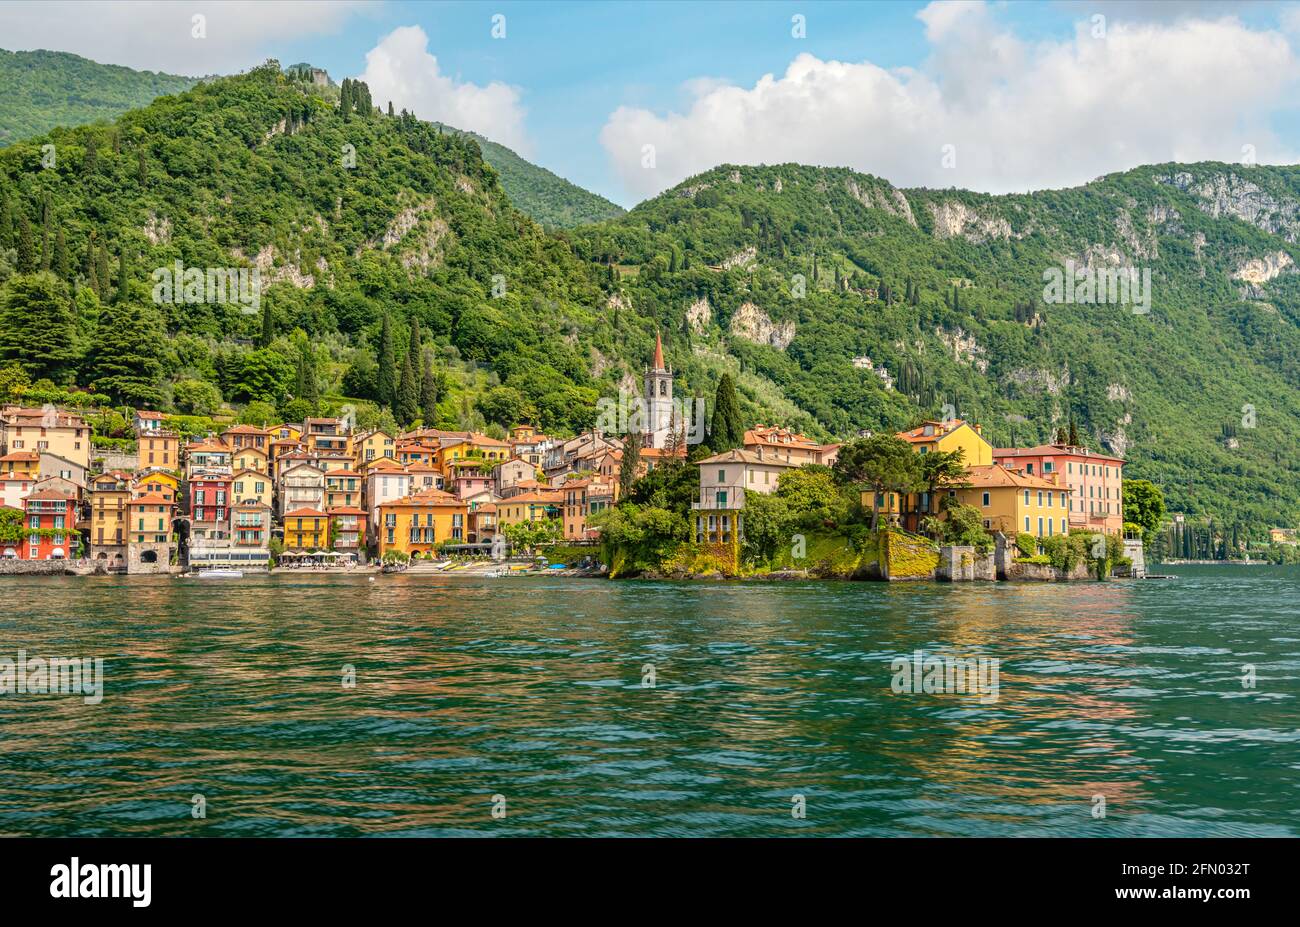 Waterfront ofc vom Seeufer aus gesehen, Lombardei, Italien Stockfoto